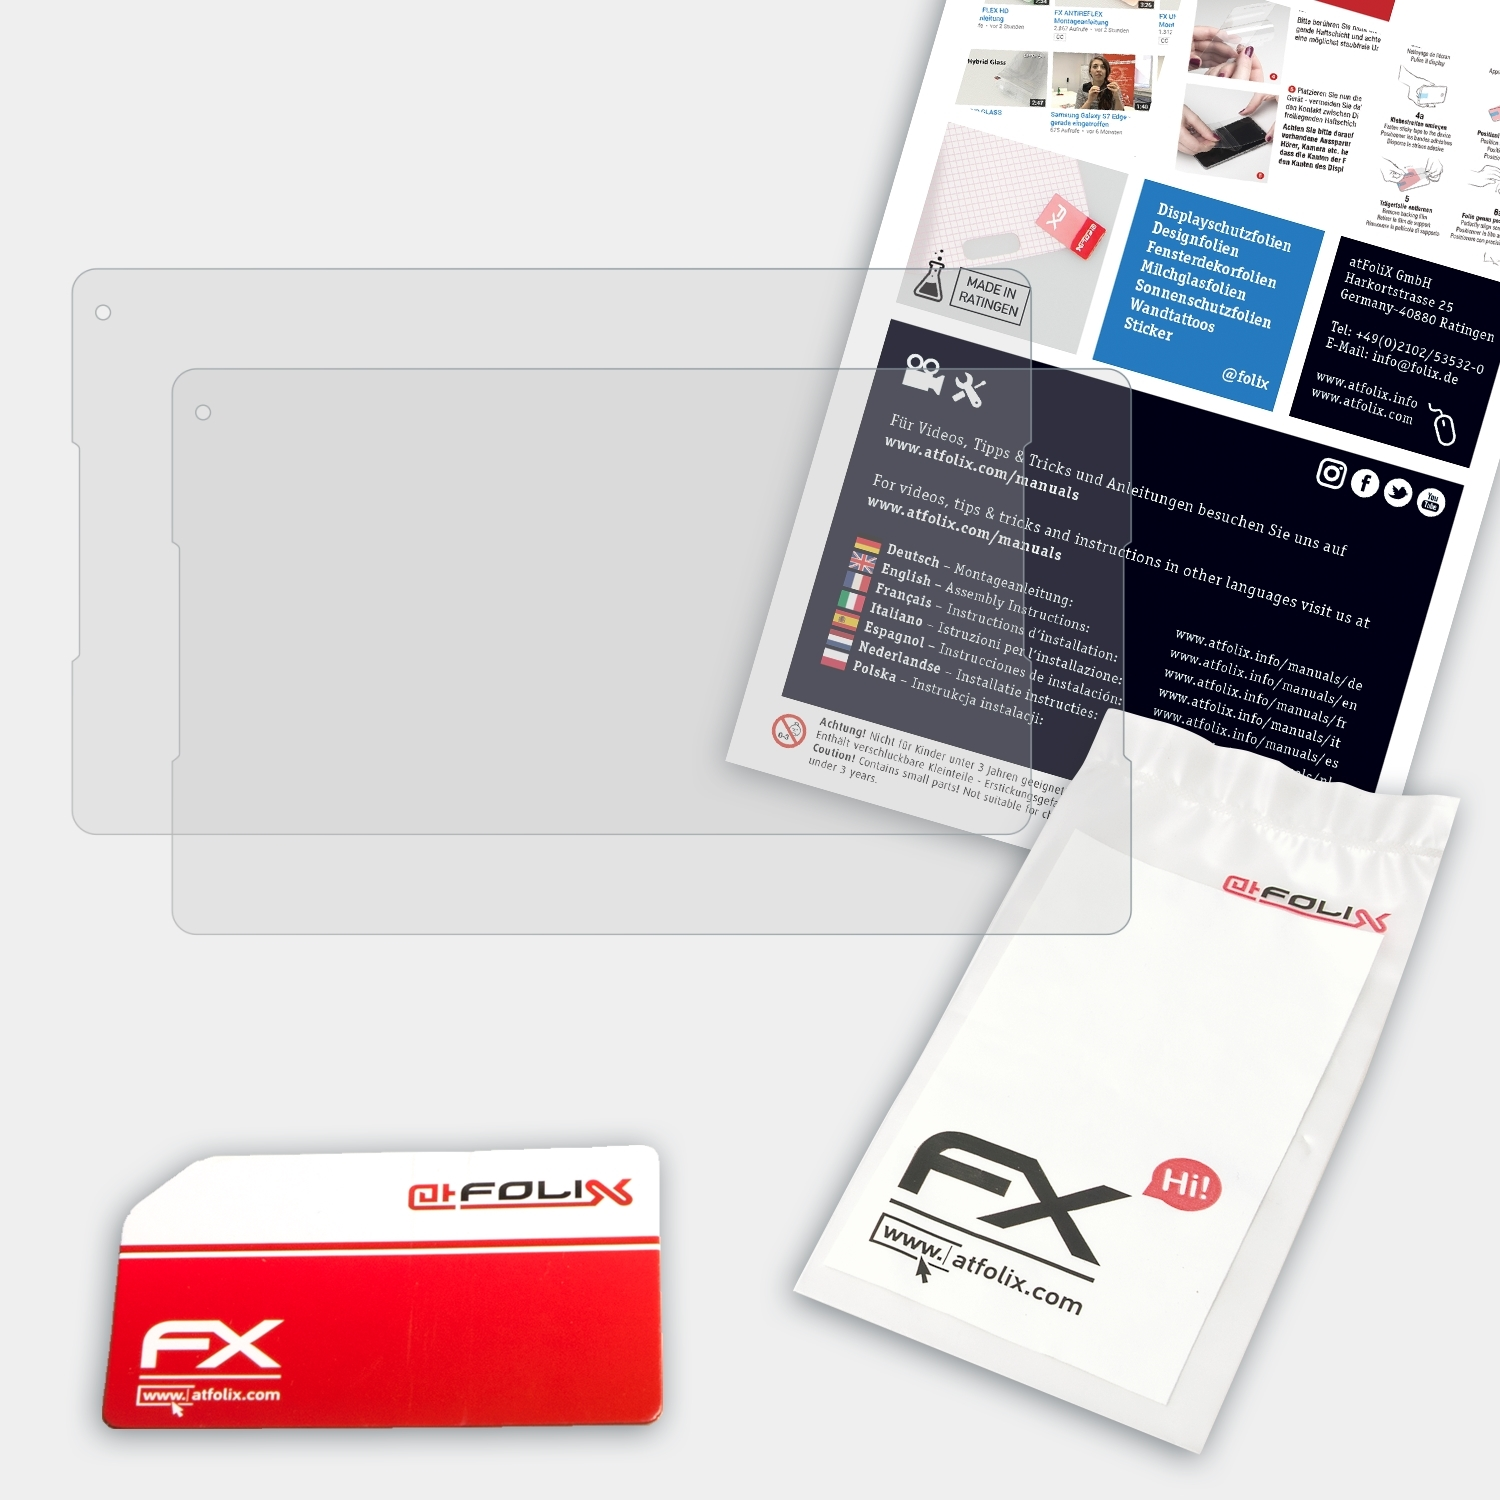 FX-Antireflex Vodafone Displayschutz(für Tab ATFOLIX 7) Prime 2x